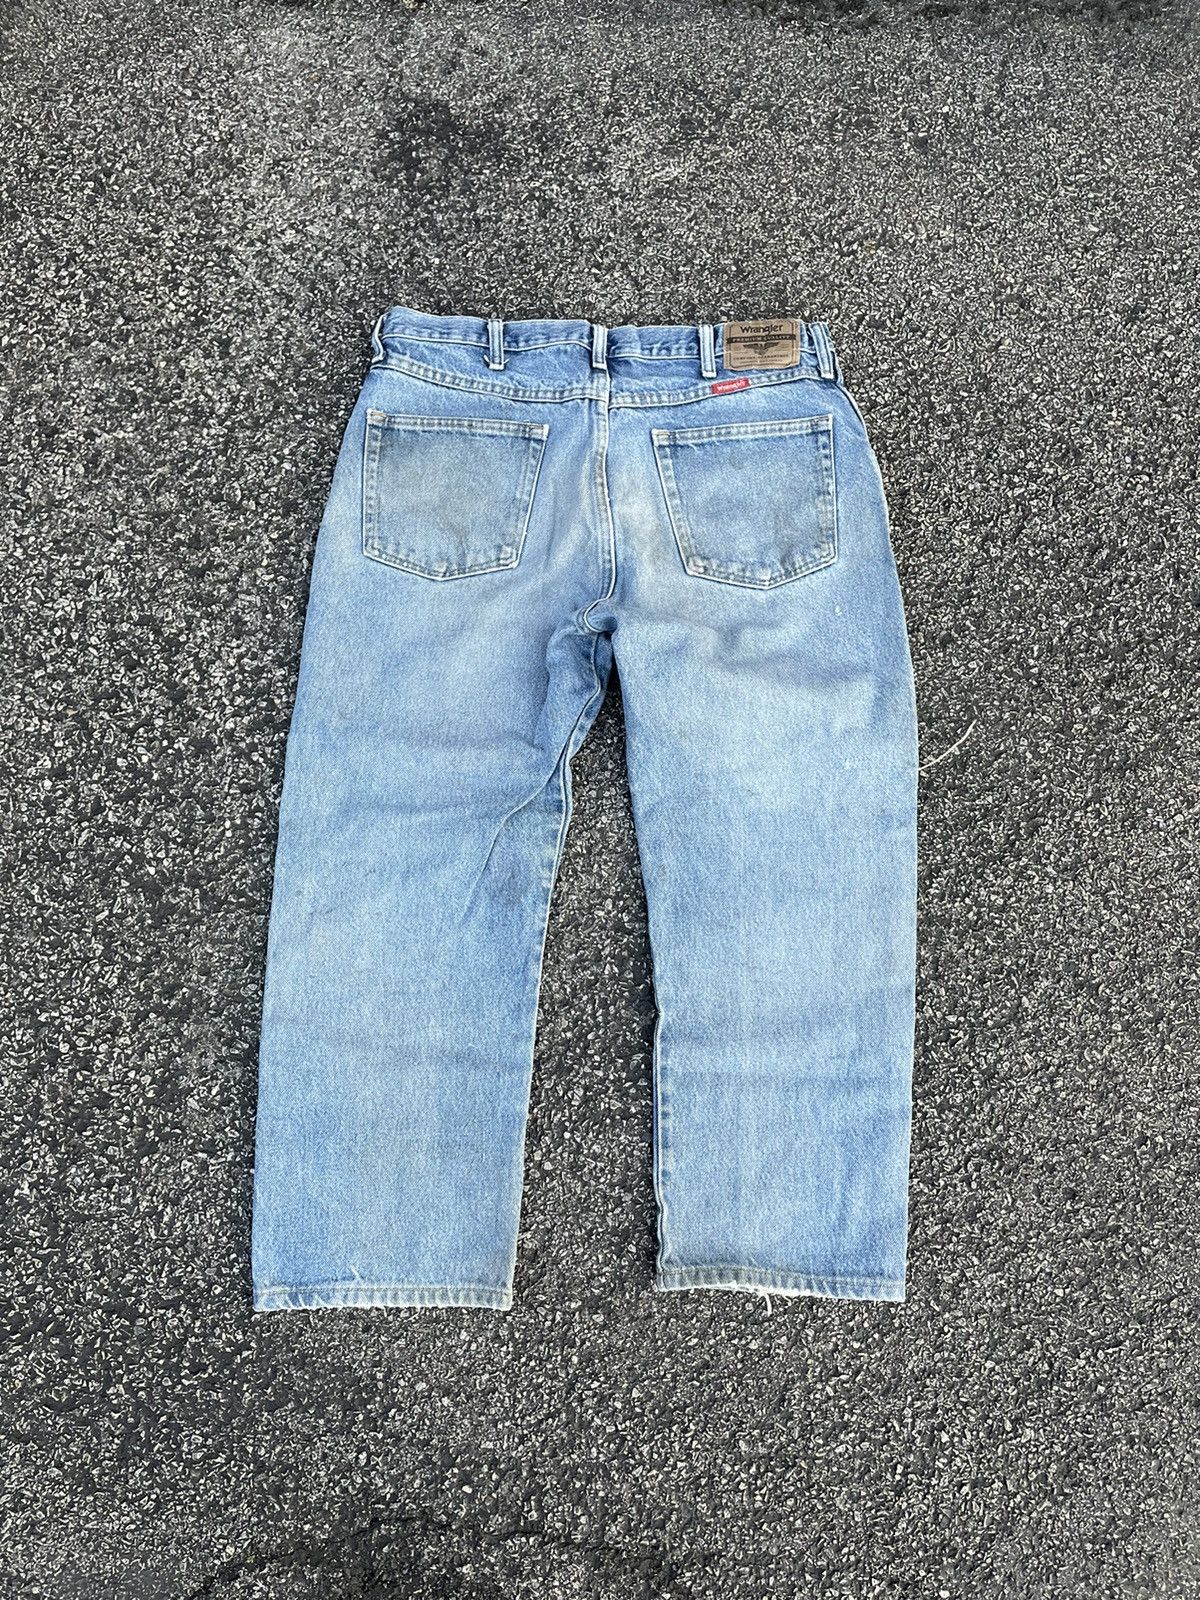 Wrangler Vintage wrangler distressed light wash jeans Size US 34 / EU 50 - 2 Preview